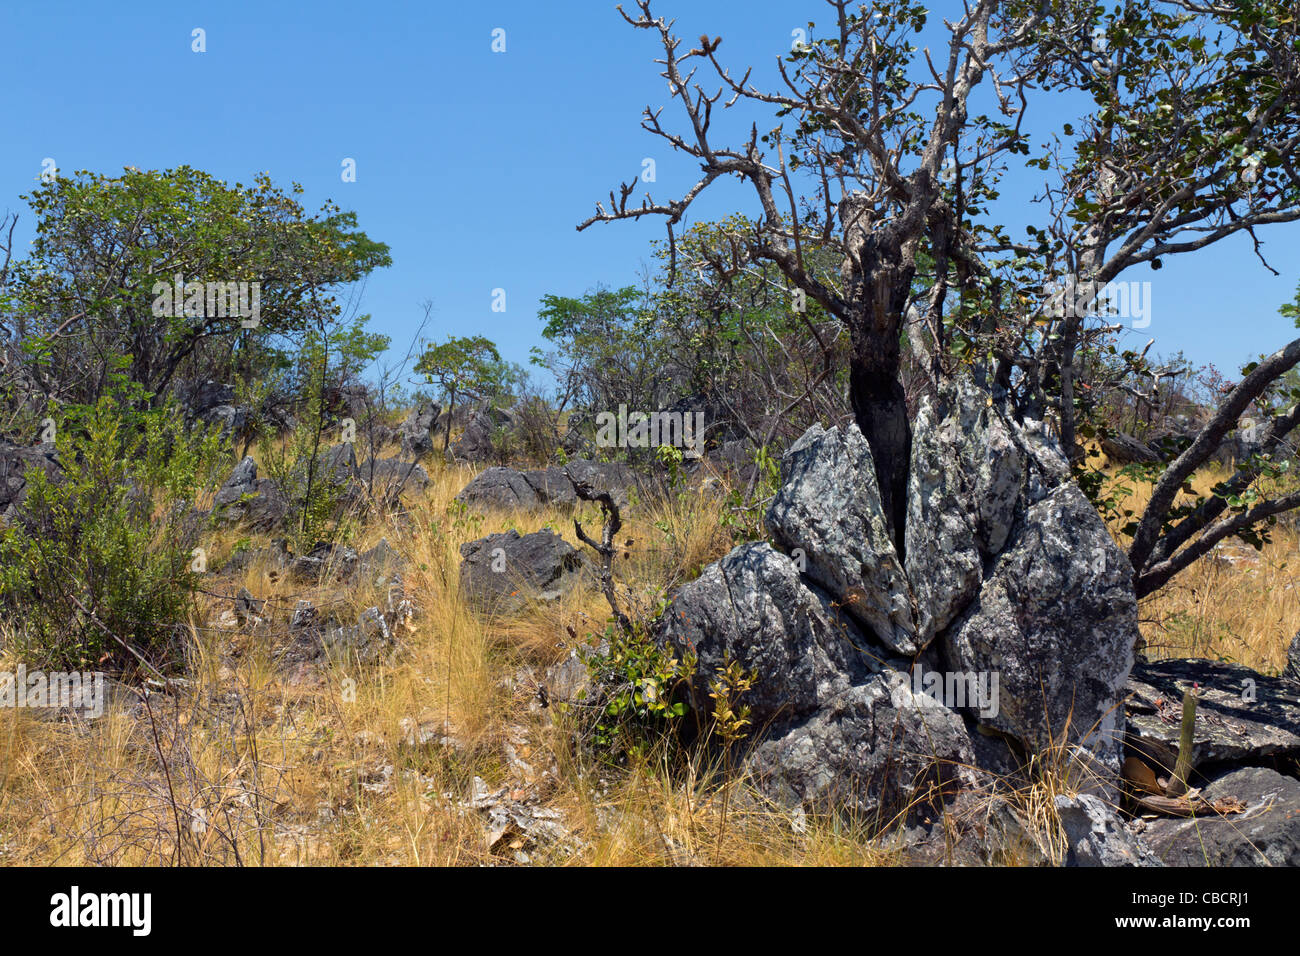 Biome de savane appelé cerrado, Brésil Highlands : végétation sur affleurement rocheux : l'arbre est Wunderlichia crulsiana de la famille des Asteraceae. Le cerrado est un point chaud de biodiversité. Banque D'Images